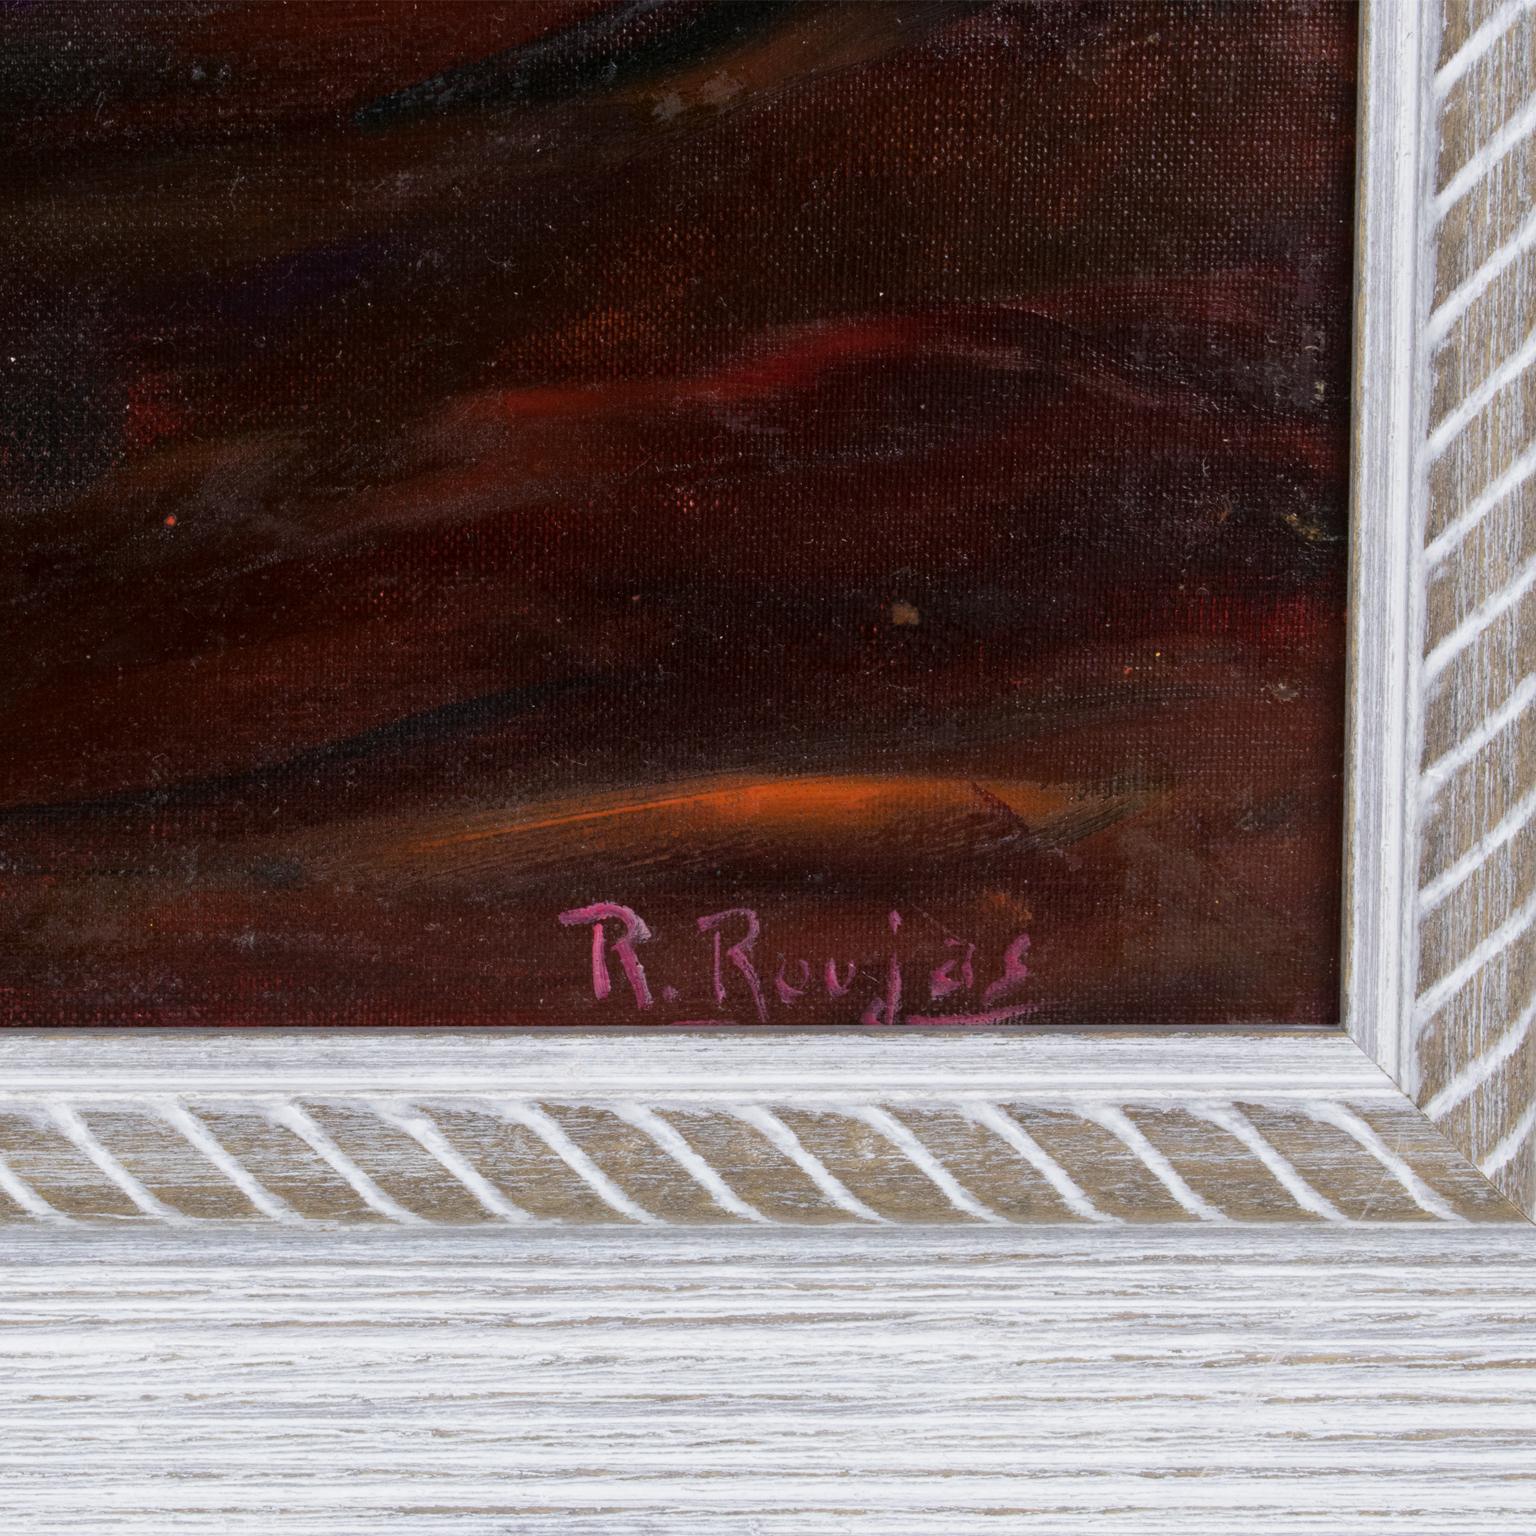 Cette charmante peinture à l'huile sur toile marouflée a été conçue par Robert Roujas (1908-2000). Cette composition romantique présente une étude d'un nu allongé vu de dos dans une position de fatigue. Le contraste des couleurs de l'arrière-plan